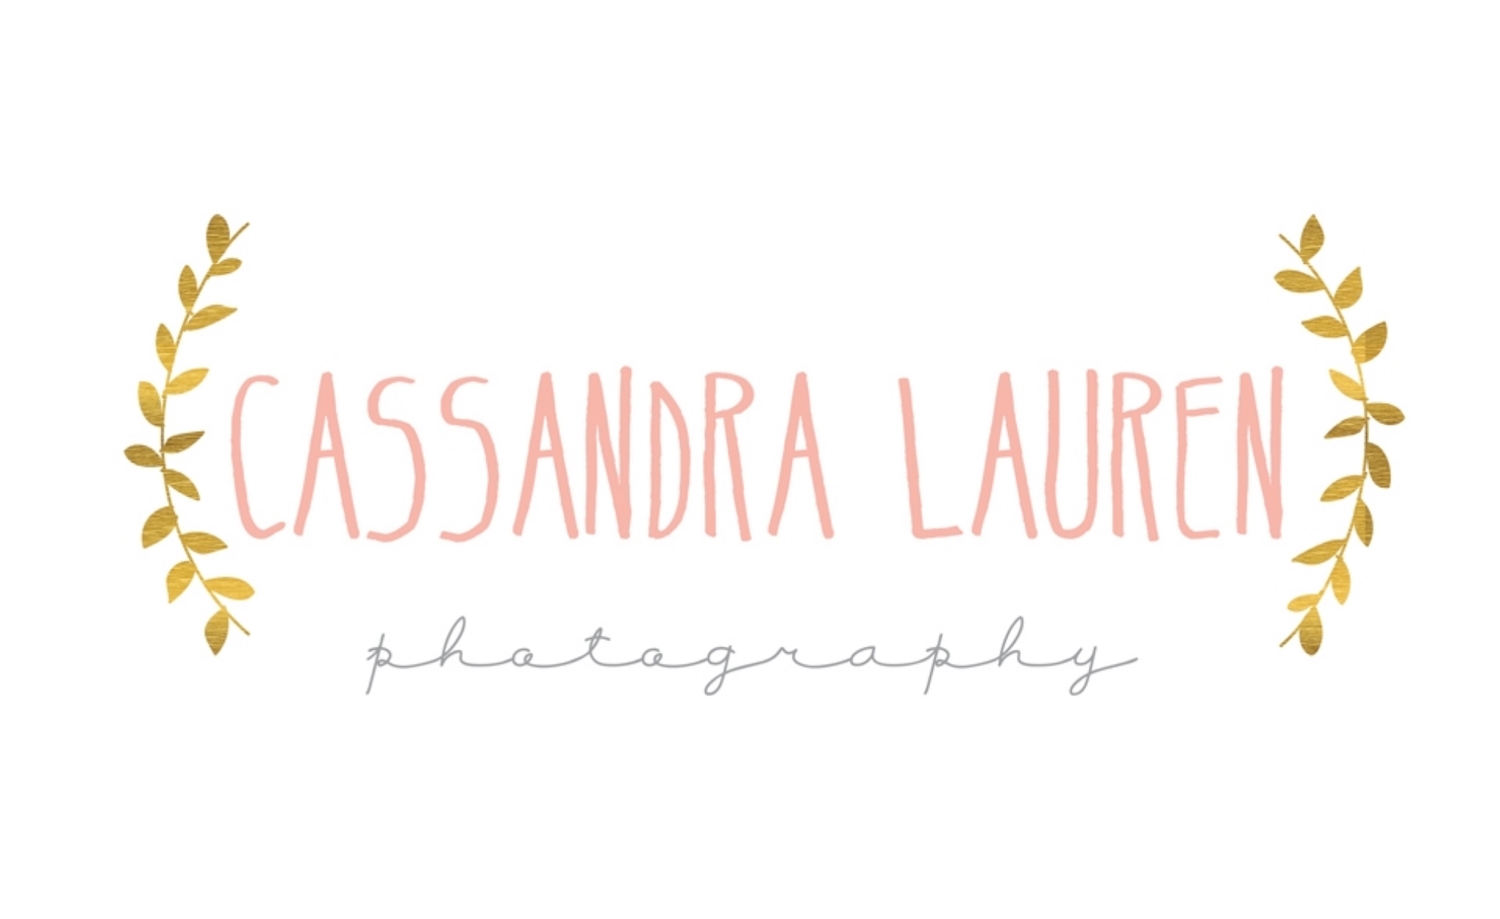 Cassandra Lauren Photography